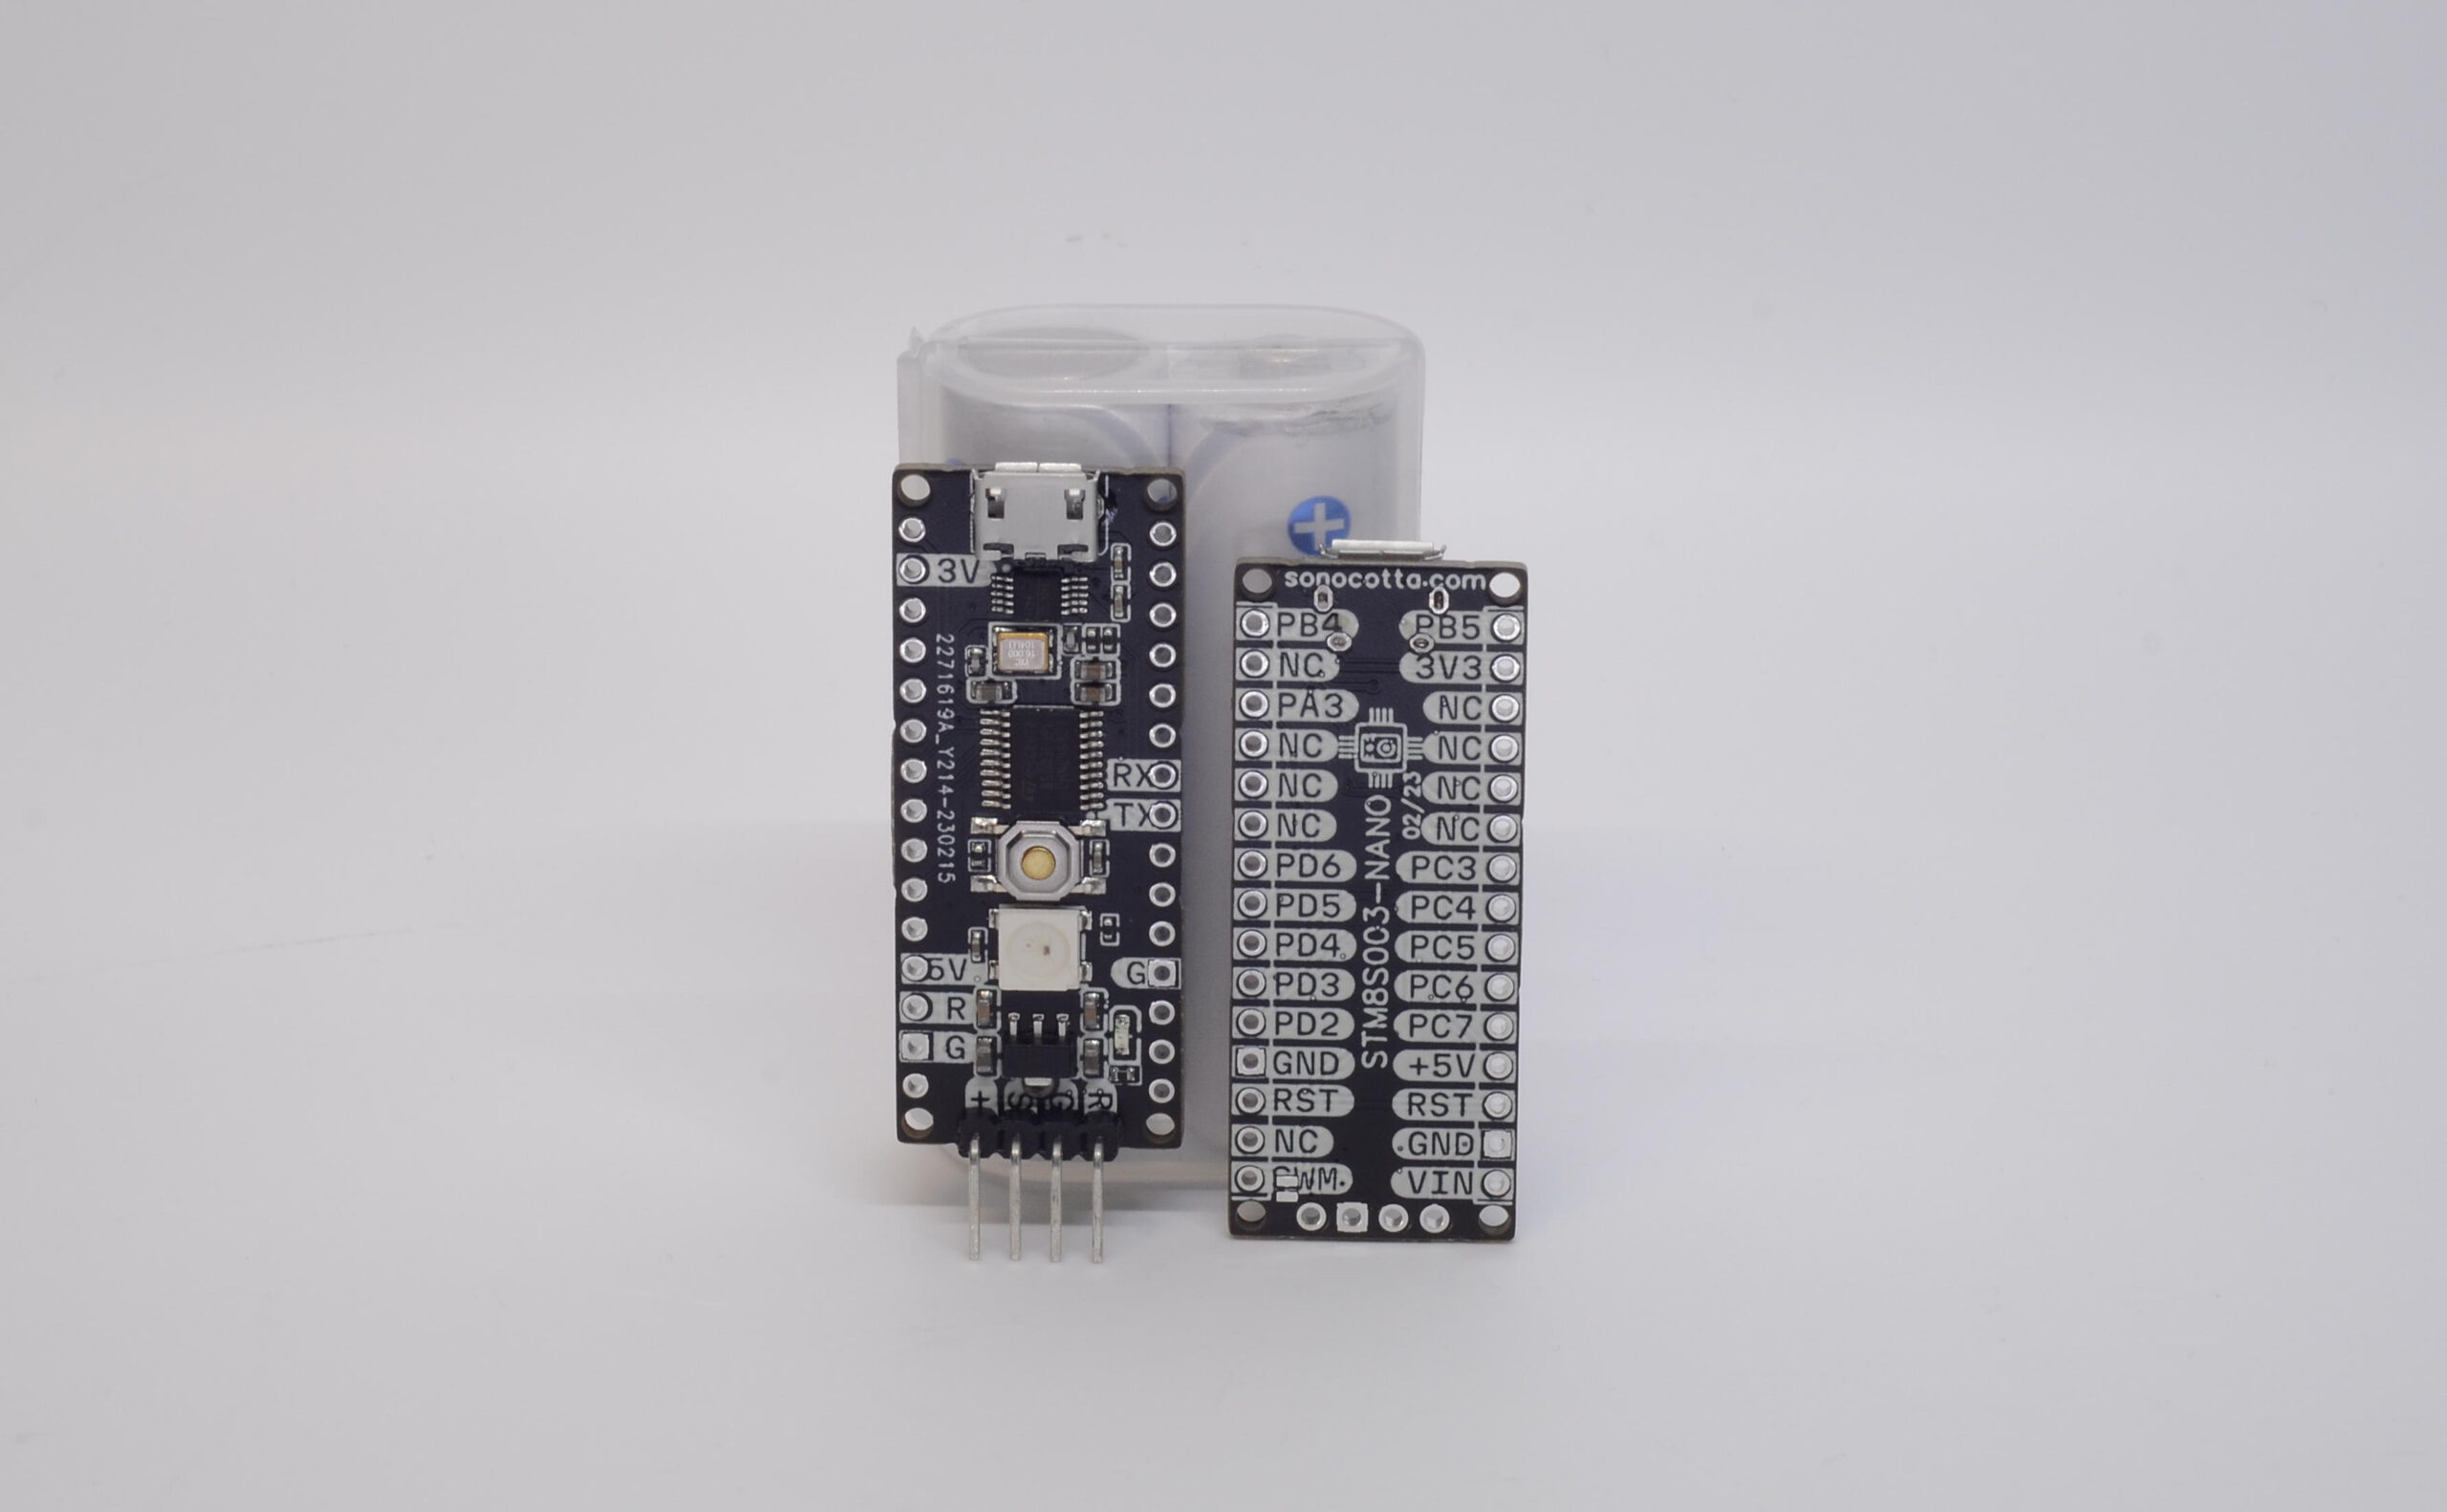 STM8S003 Development Board is an Arduino Nano-sized board